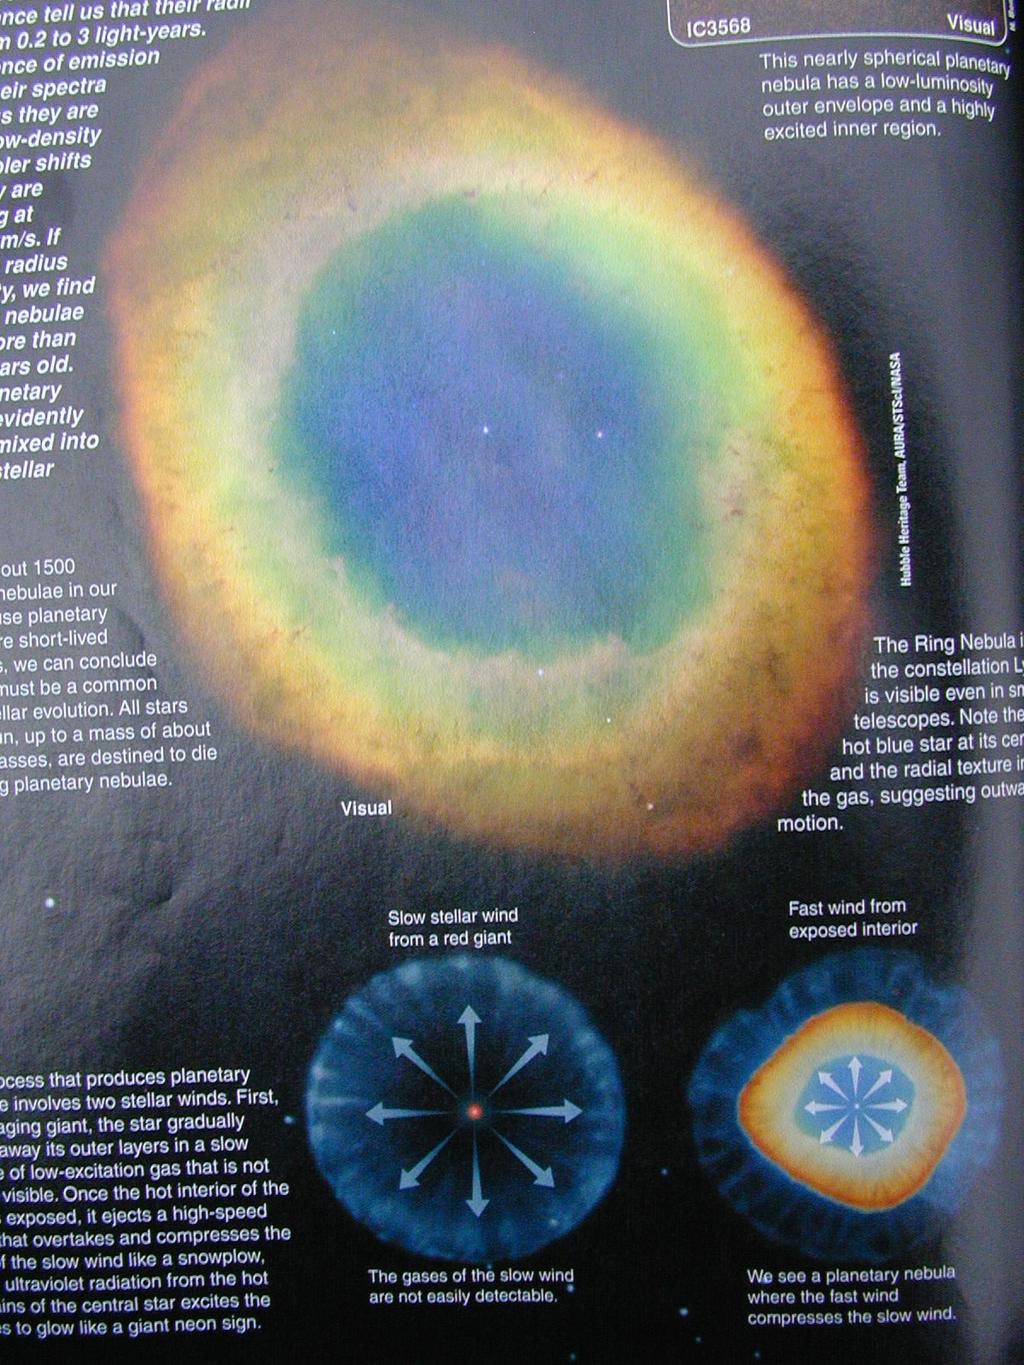 Planetary nebulae: